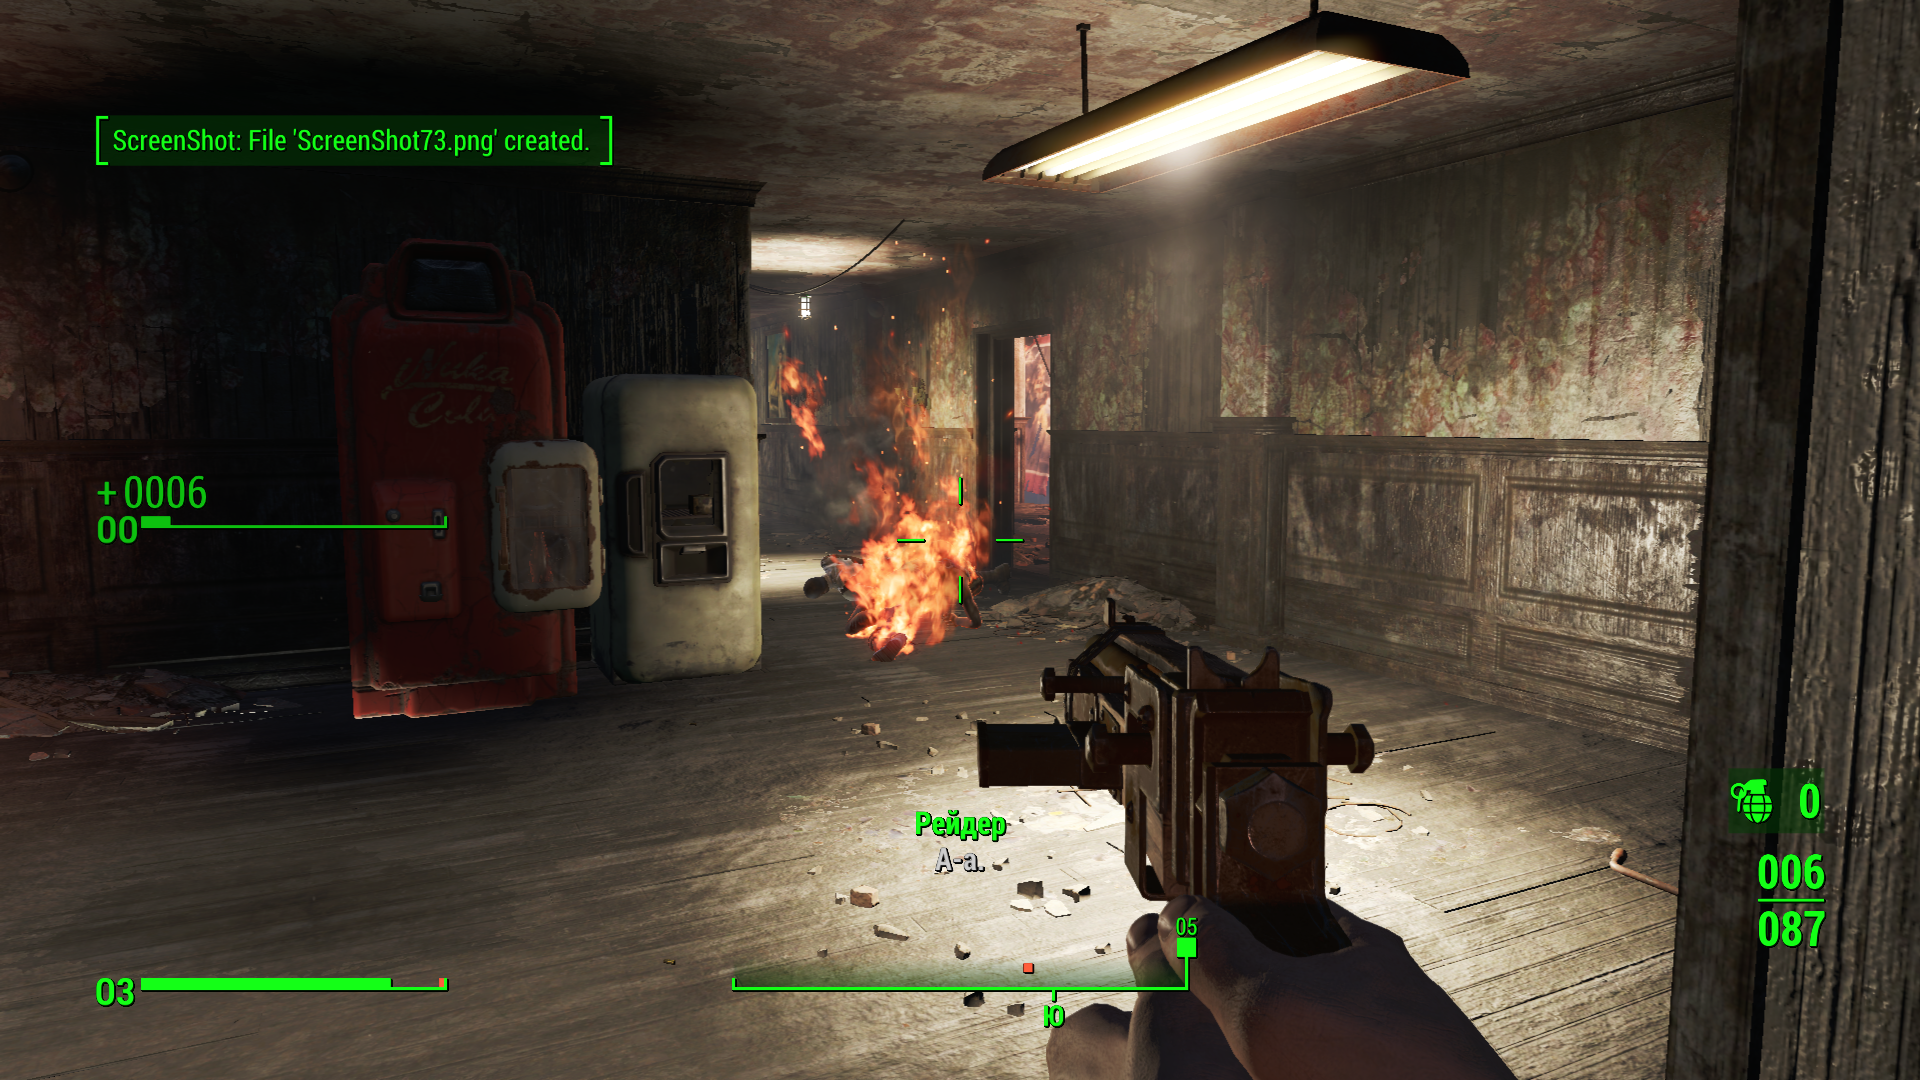 Полный обзор игры Fallout 4 от iGamesWorld: Почему Fallout 4 хорошее РПГ?